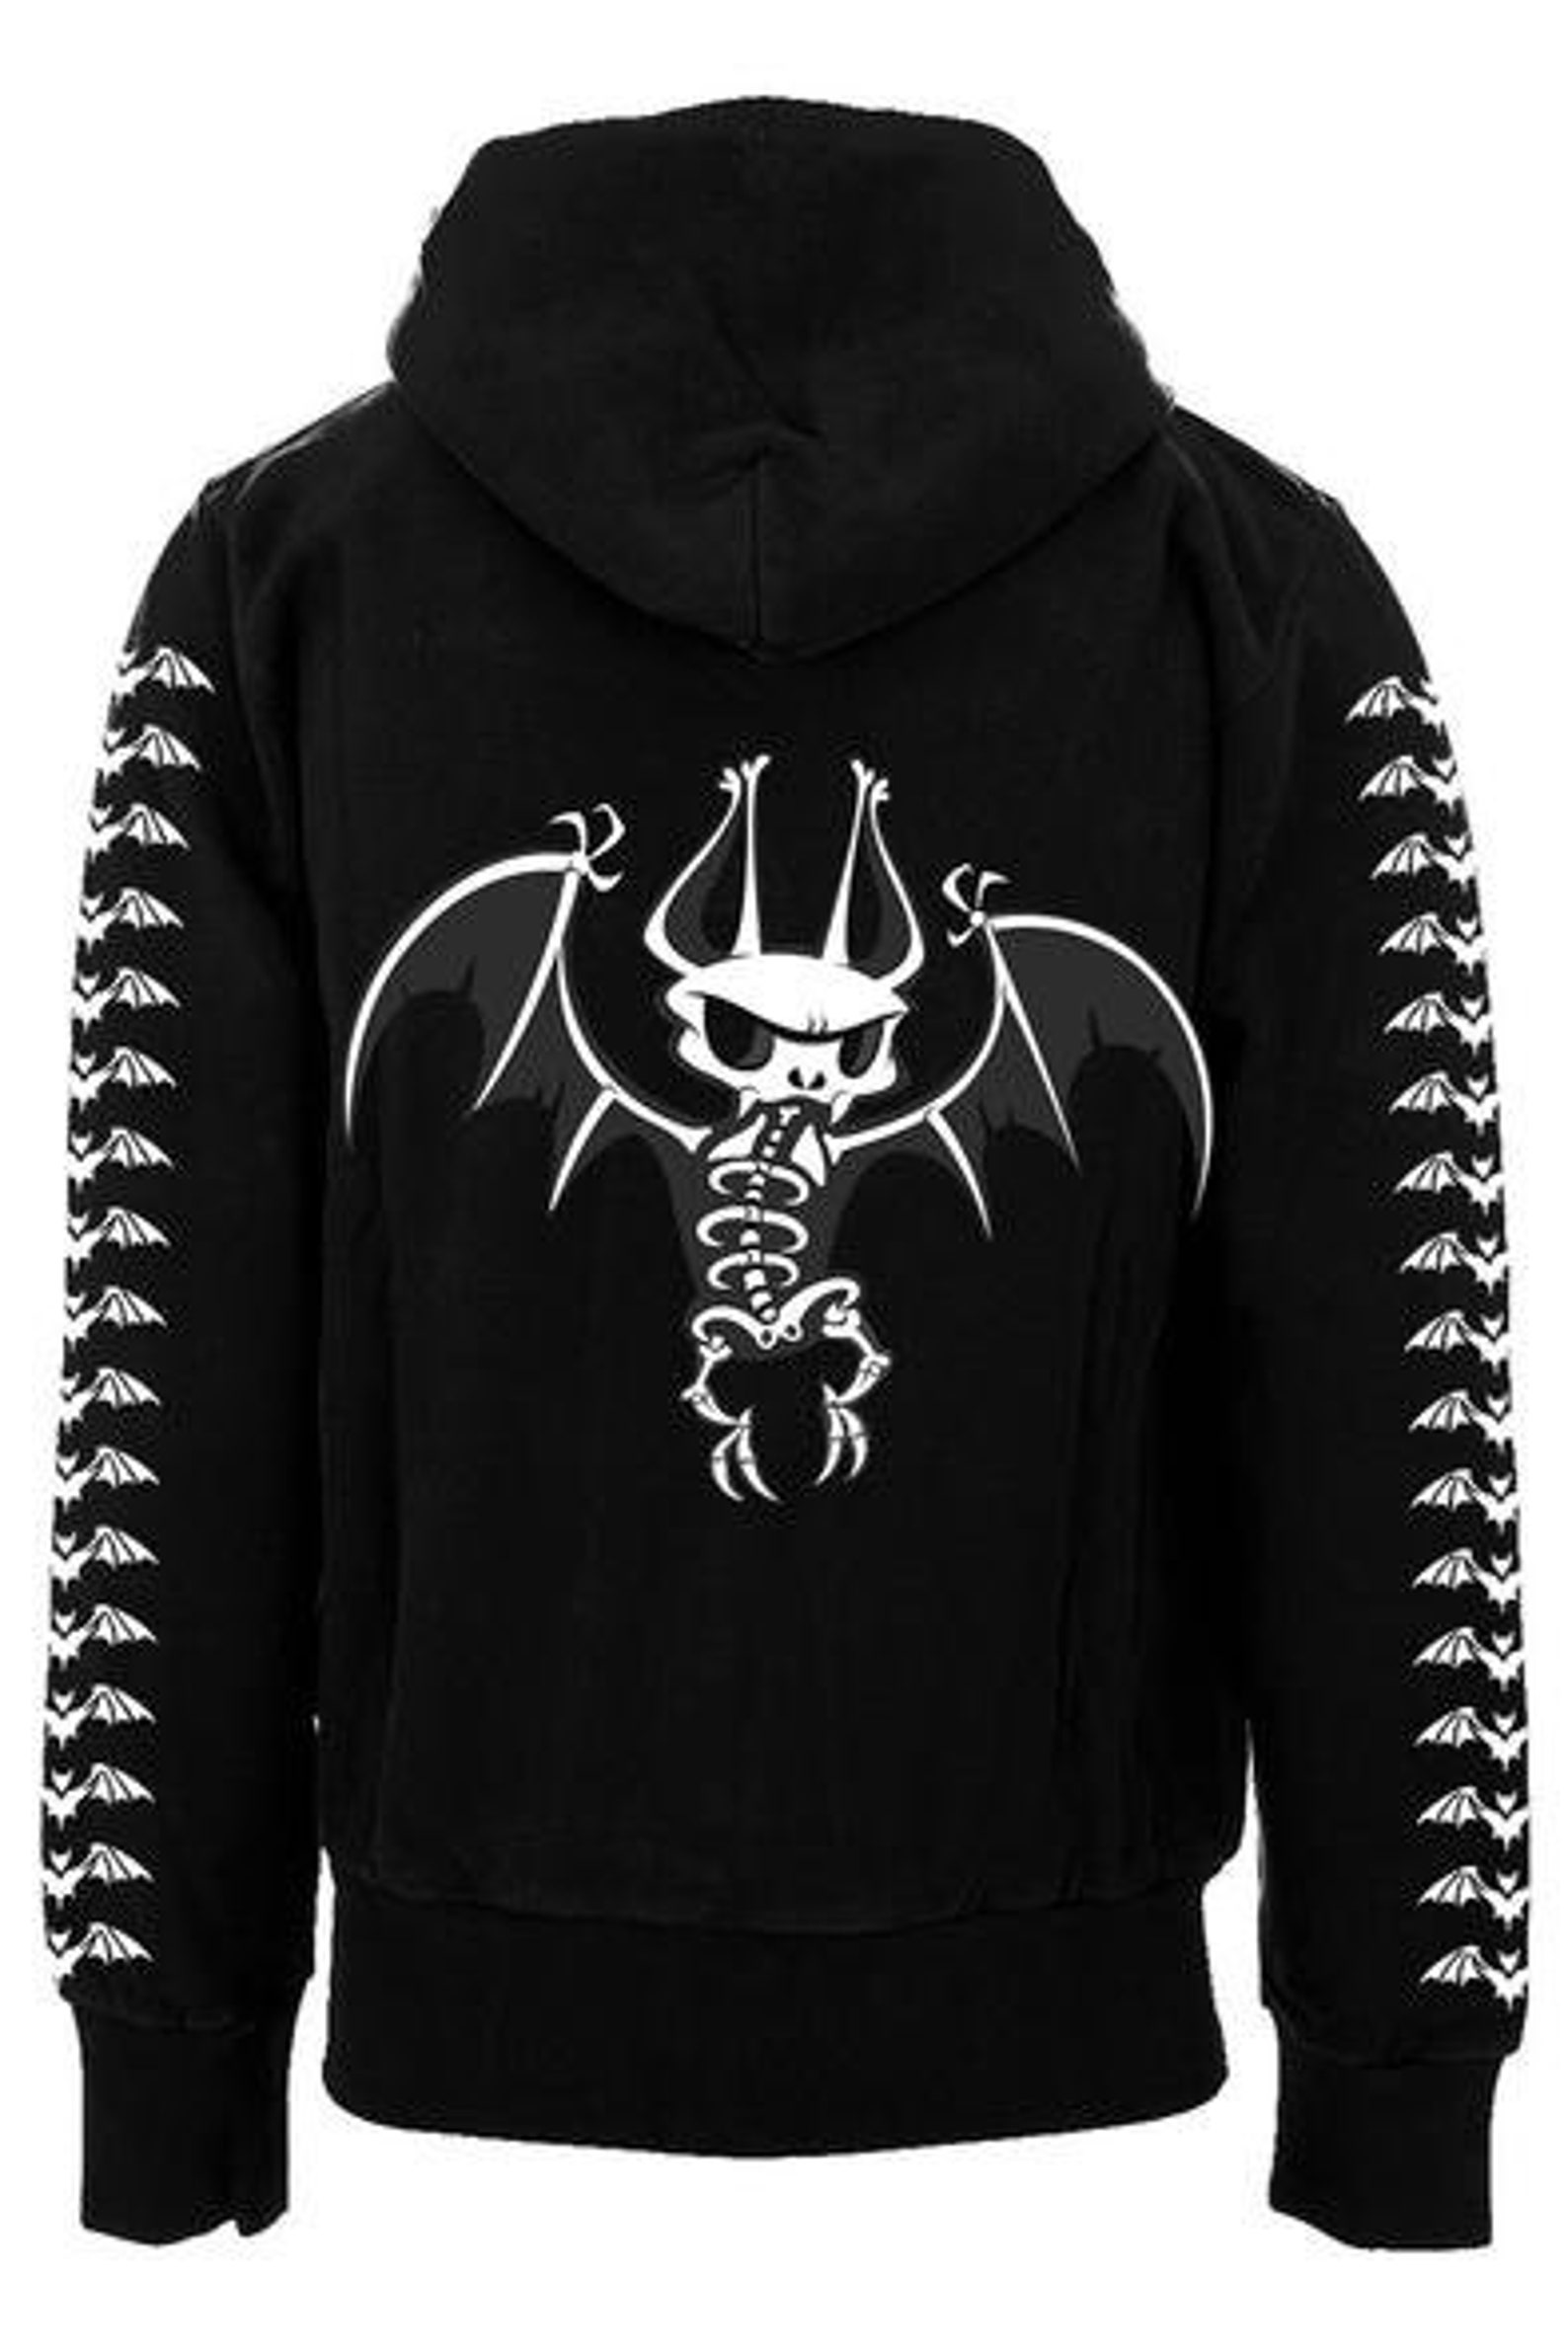 VampireFreaks Batty Bones T-shirt or Hoodie skeleton bat | Etsy